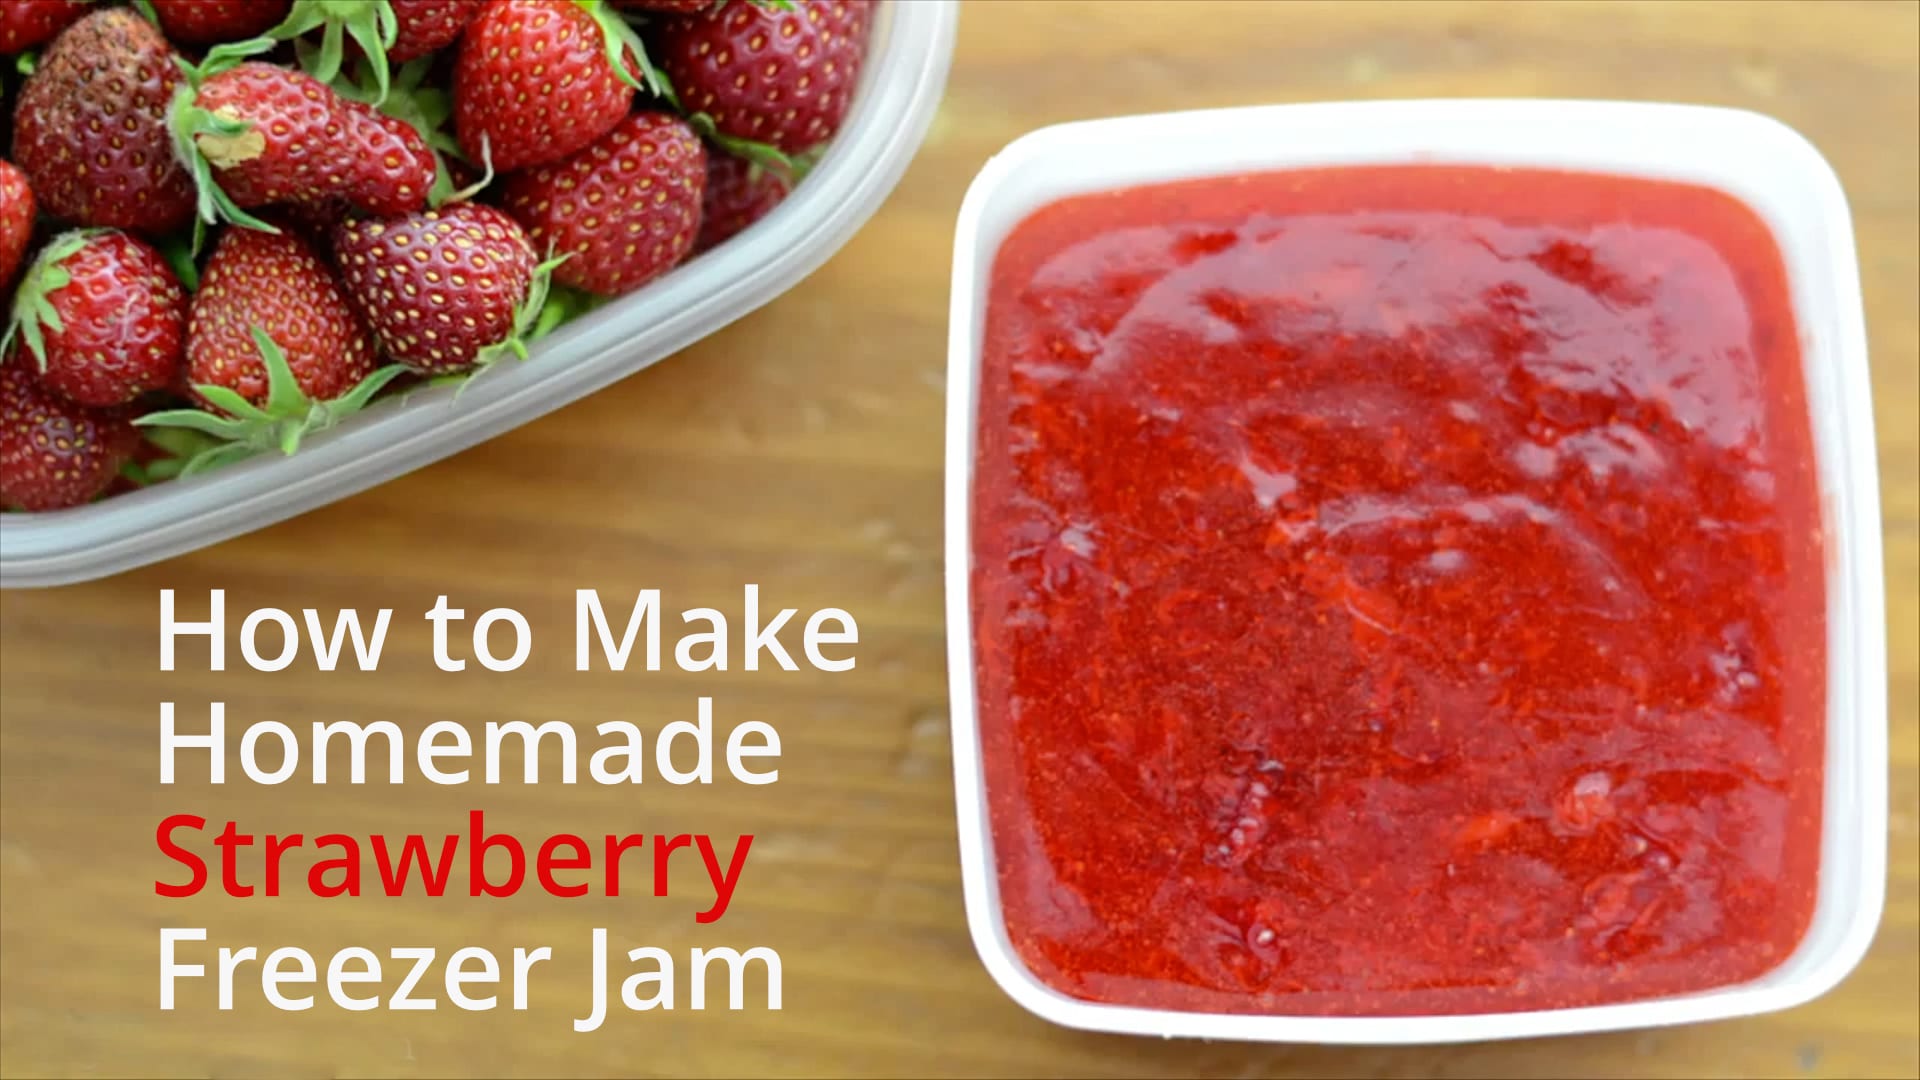 8 Steps to Homemade Freezer Jam